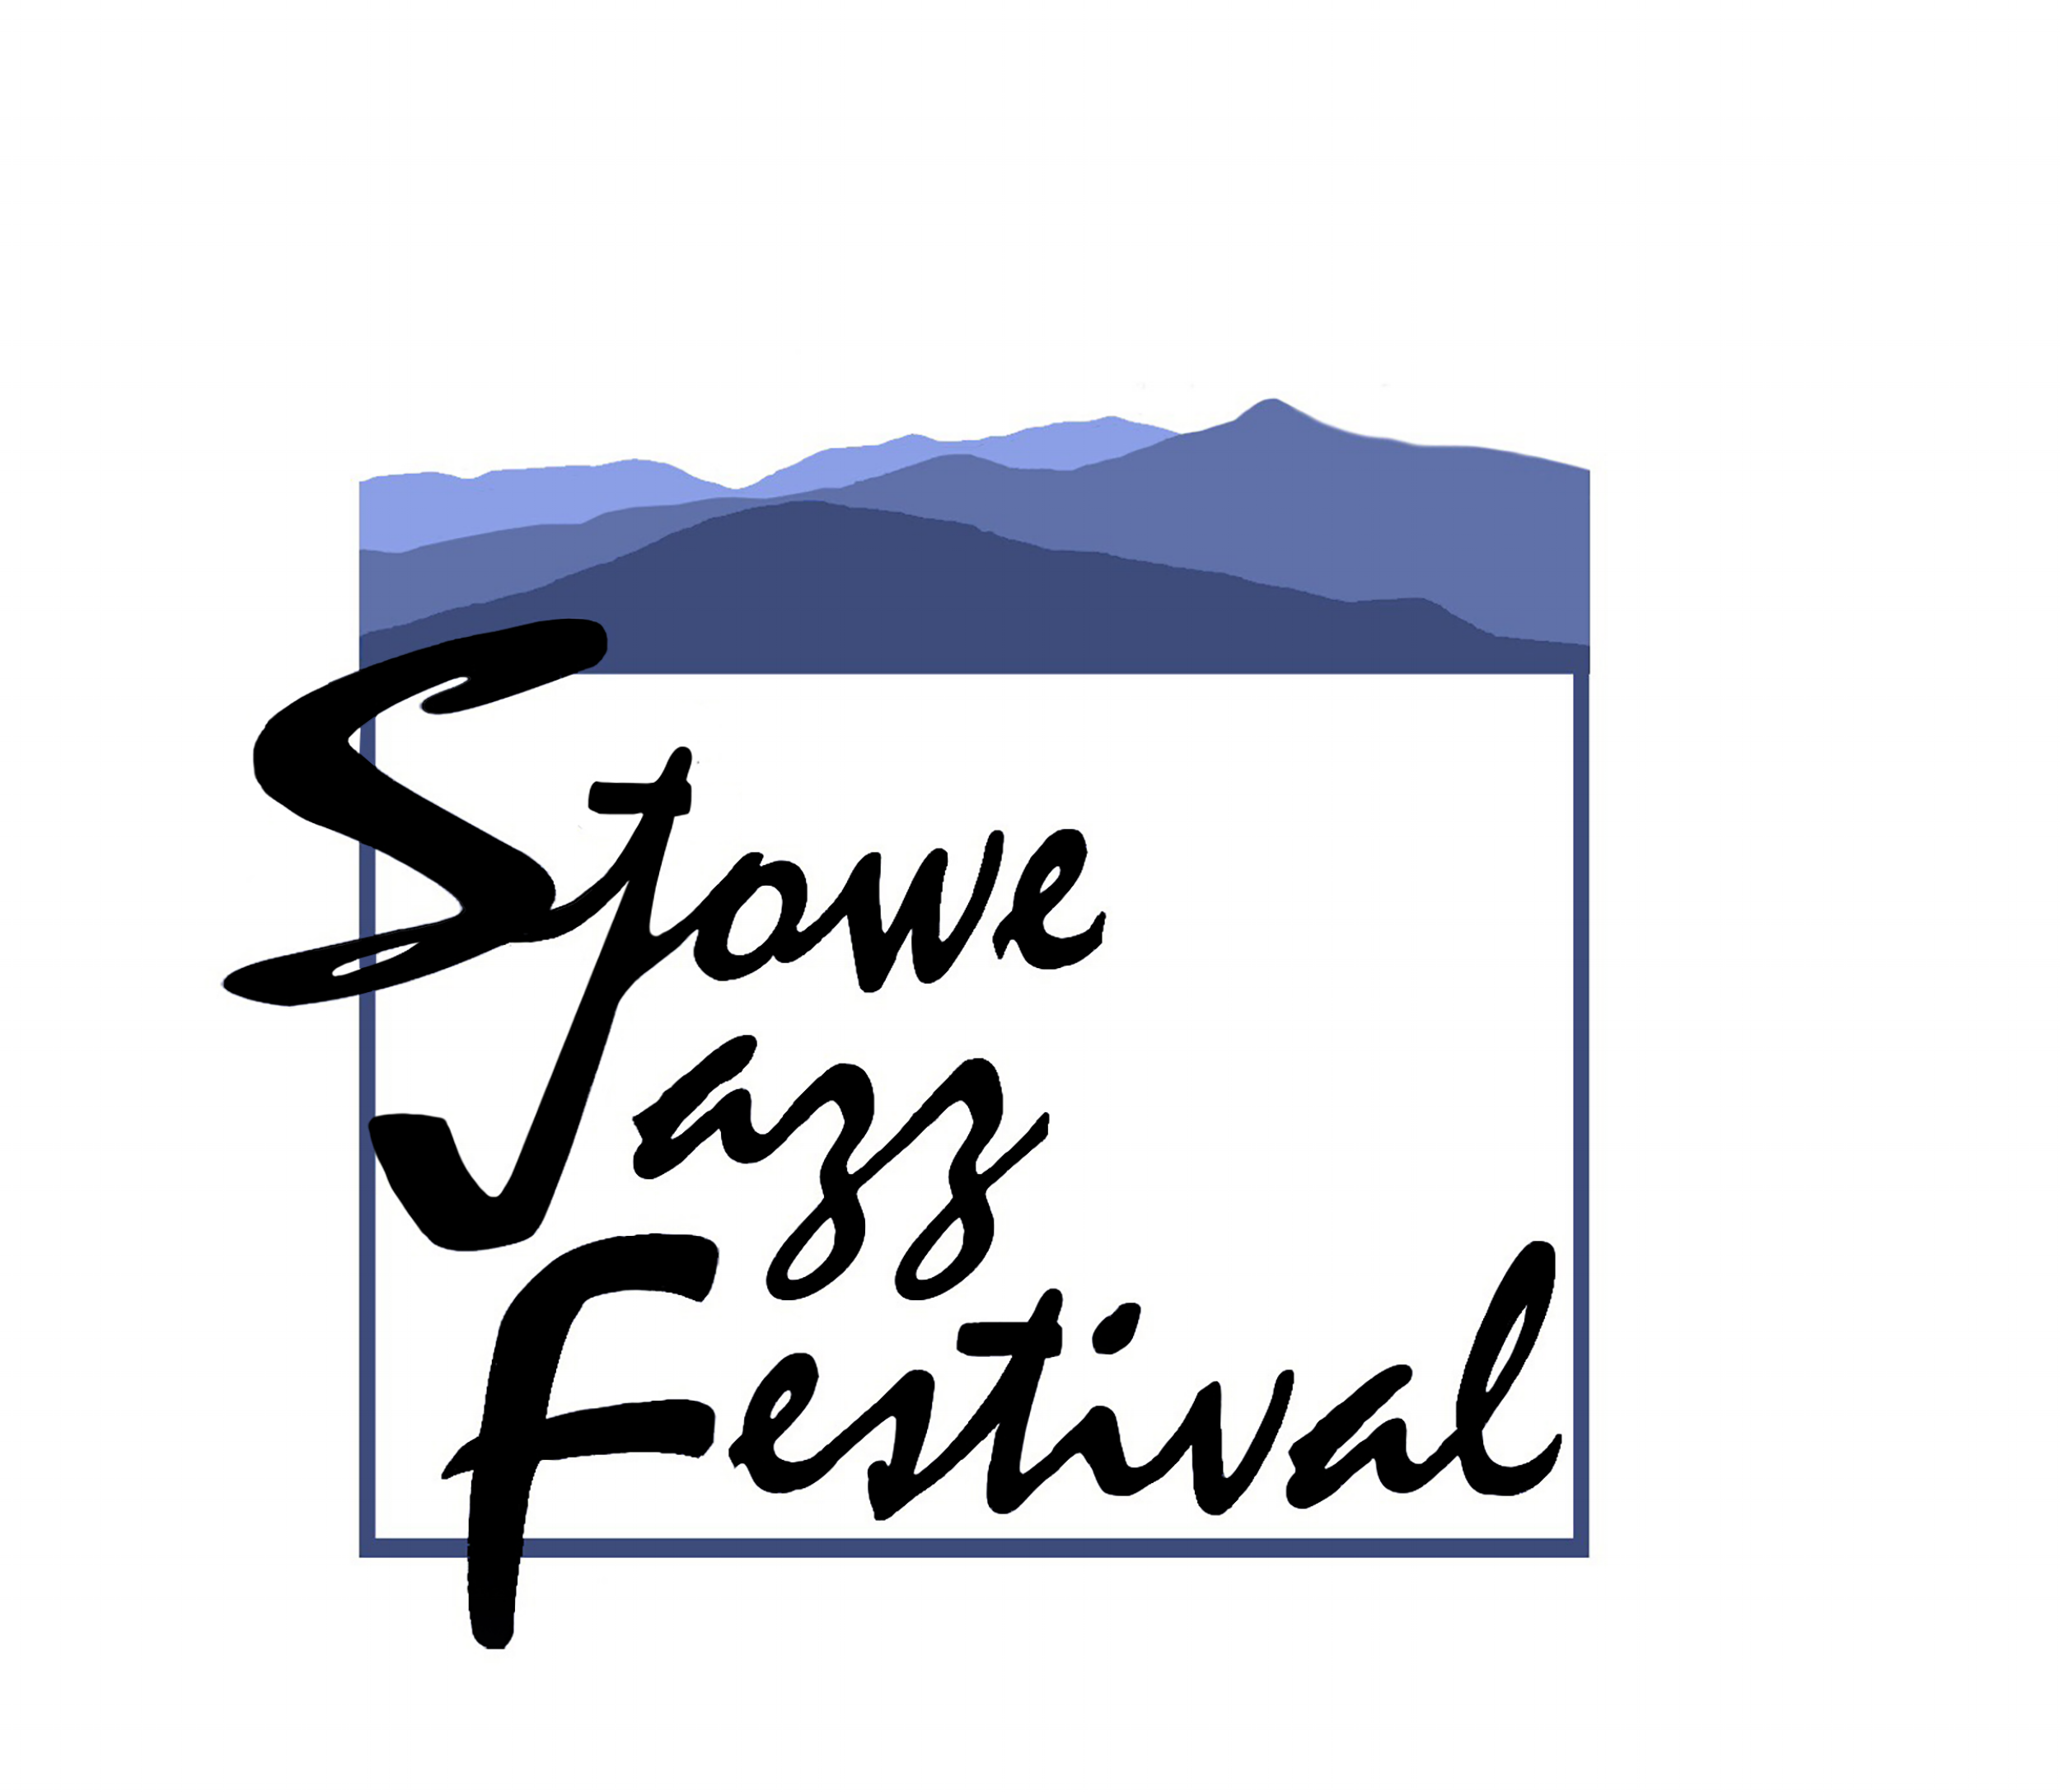 Stowe Jazz Festival